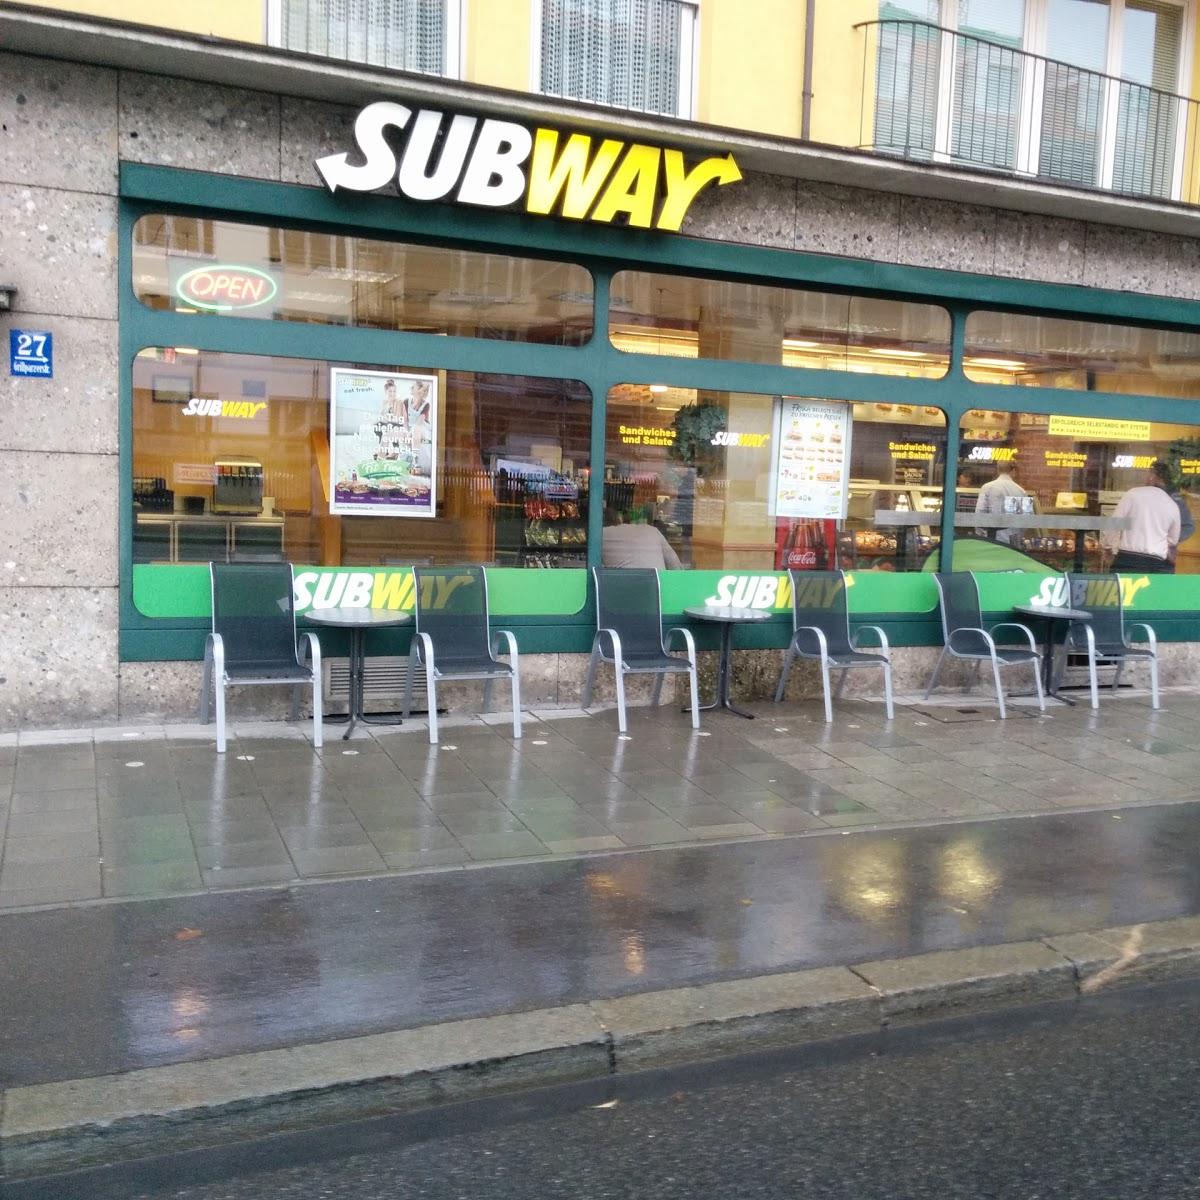 Restaurant "Subway" in München